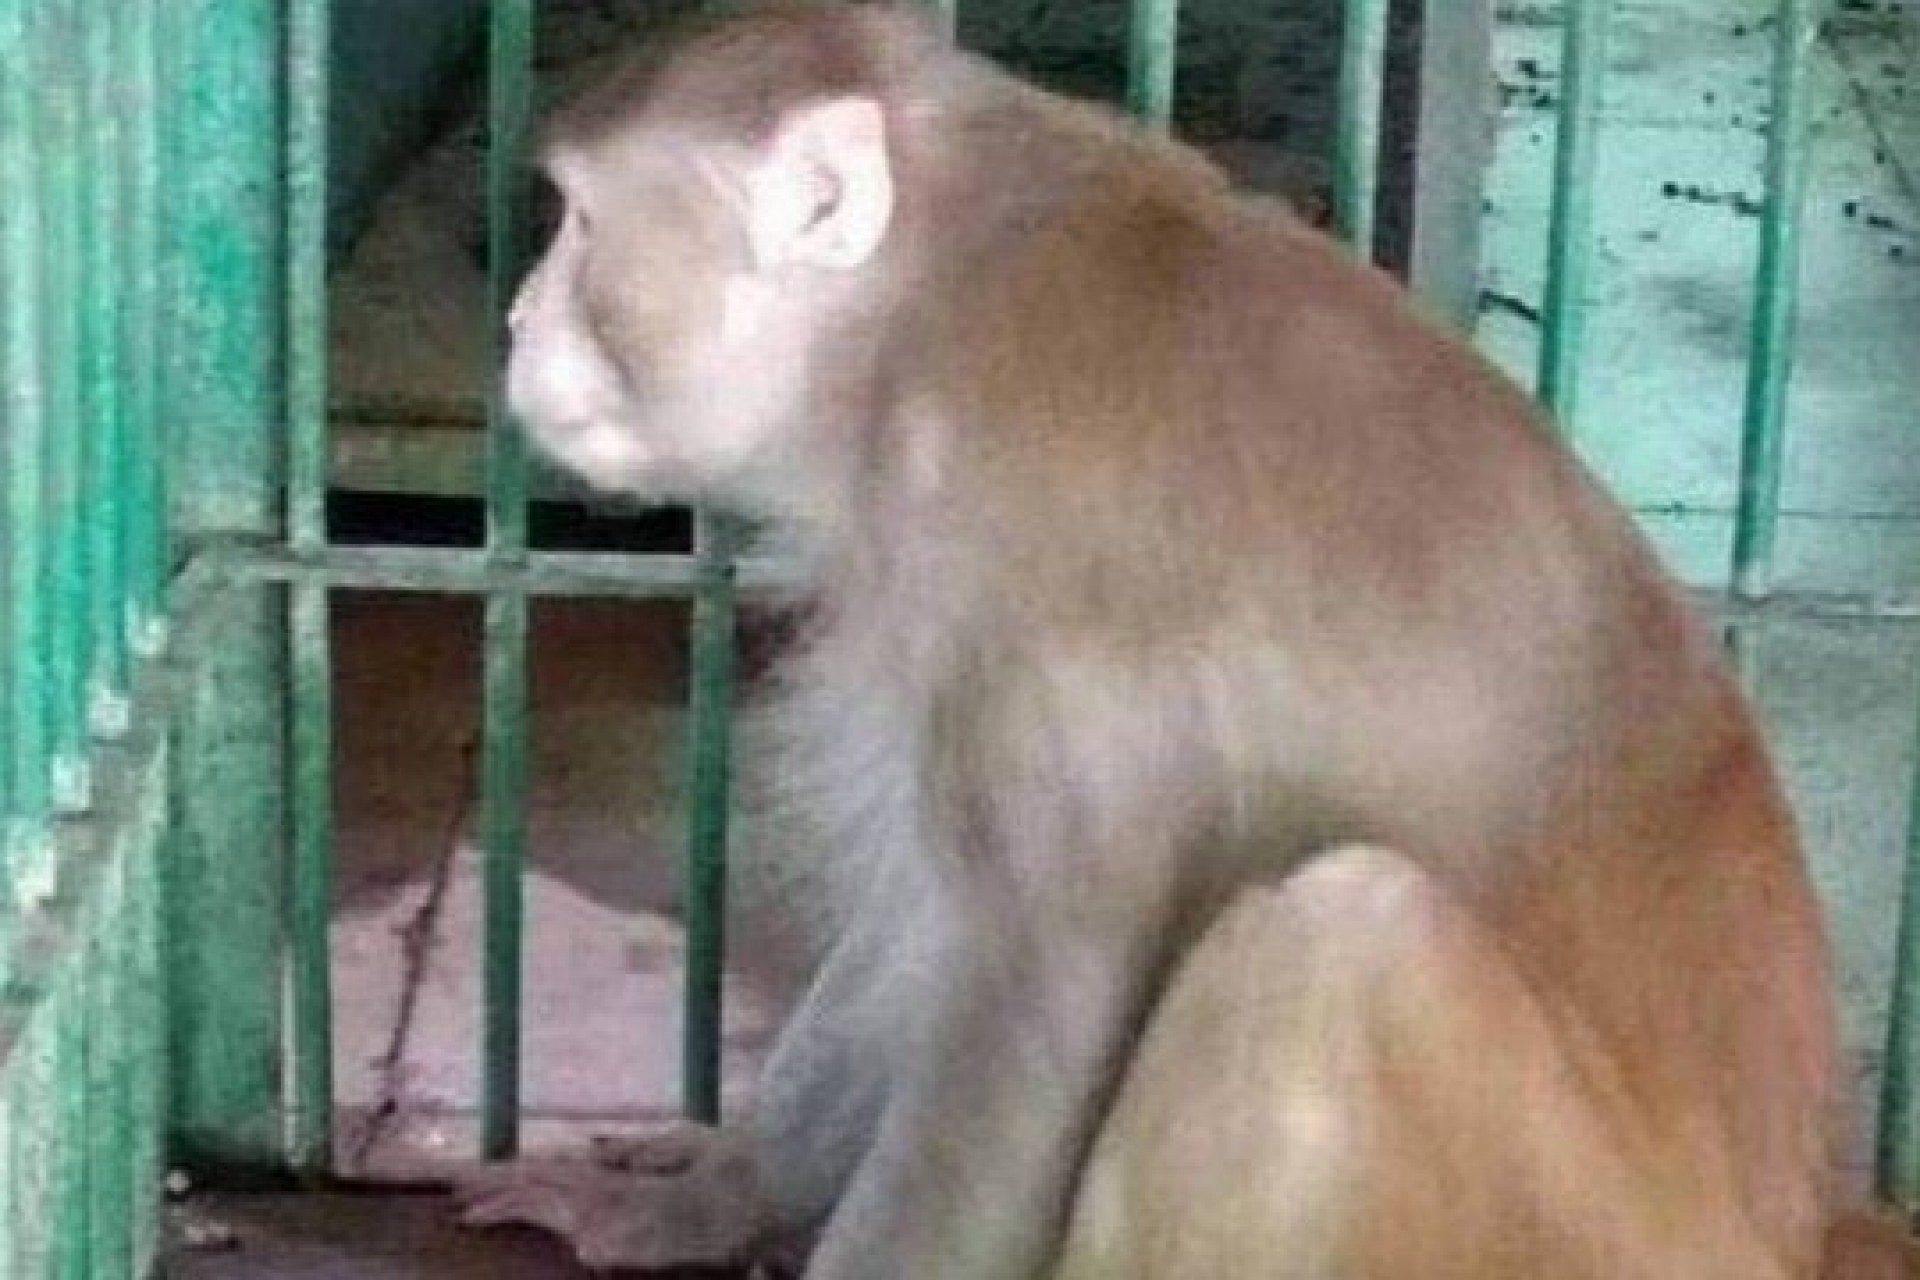 Macaco que matou uma pessoa durante crise de abstinência de álcool é condenado à 'prisão perpétua'